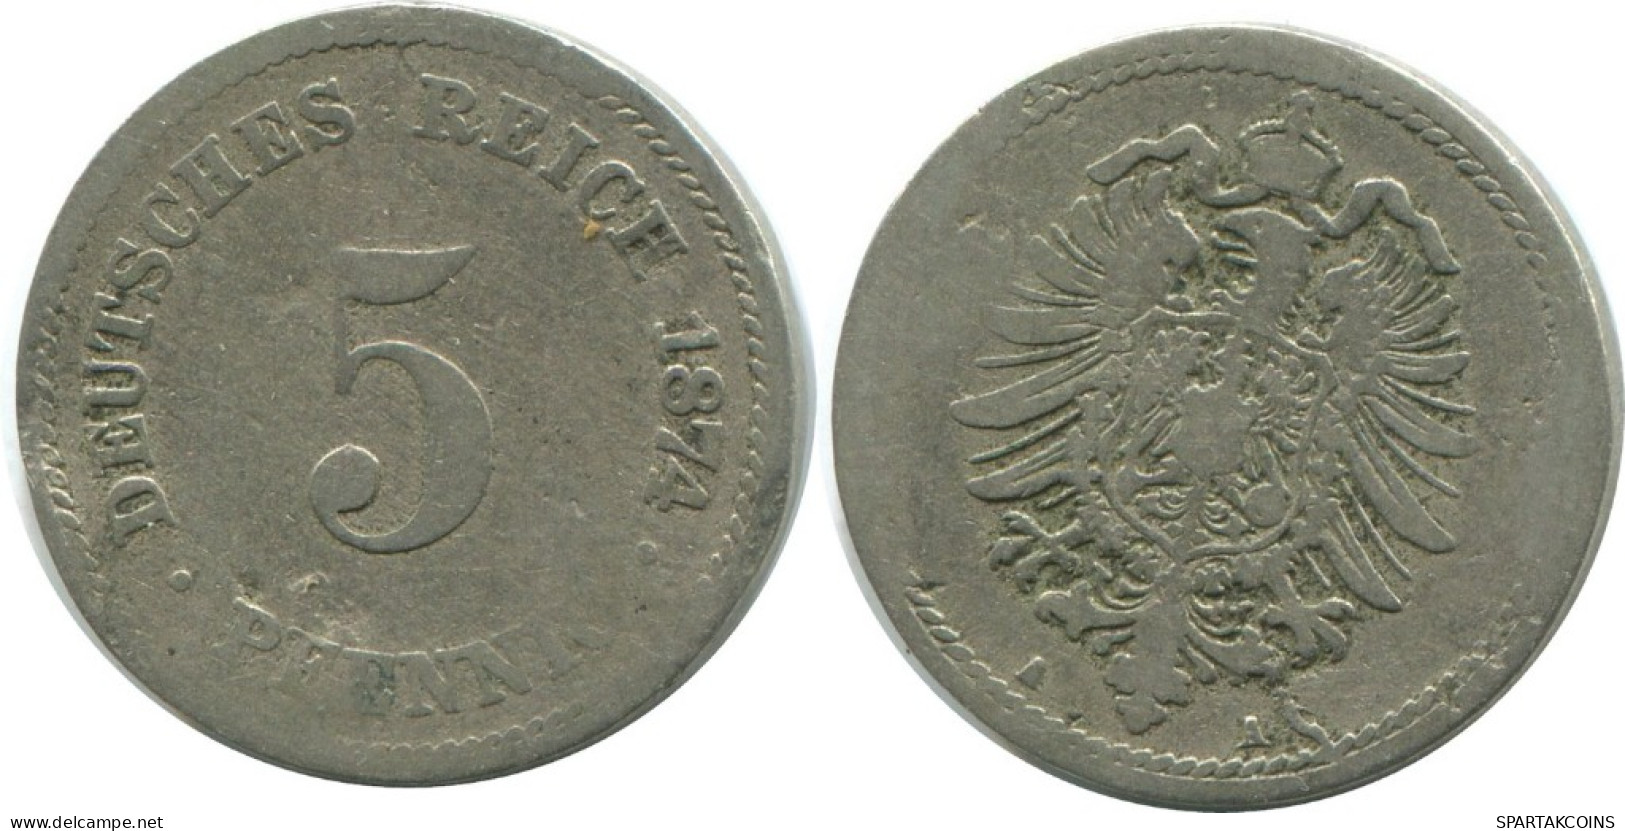 5 PFENNIG 1874 A GERMANY Coin #AE645.U.A - 5 Pfennig